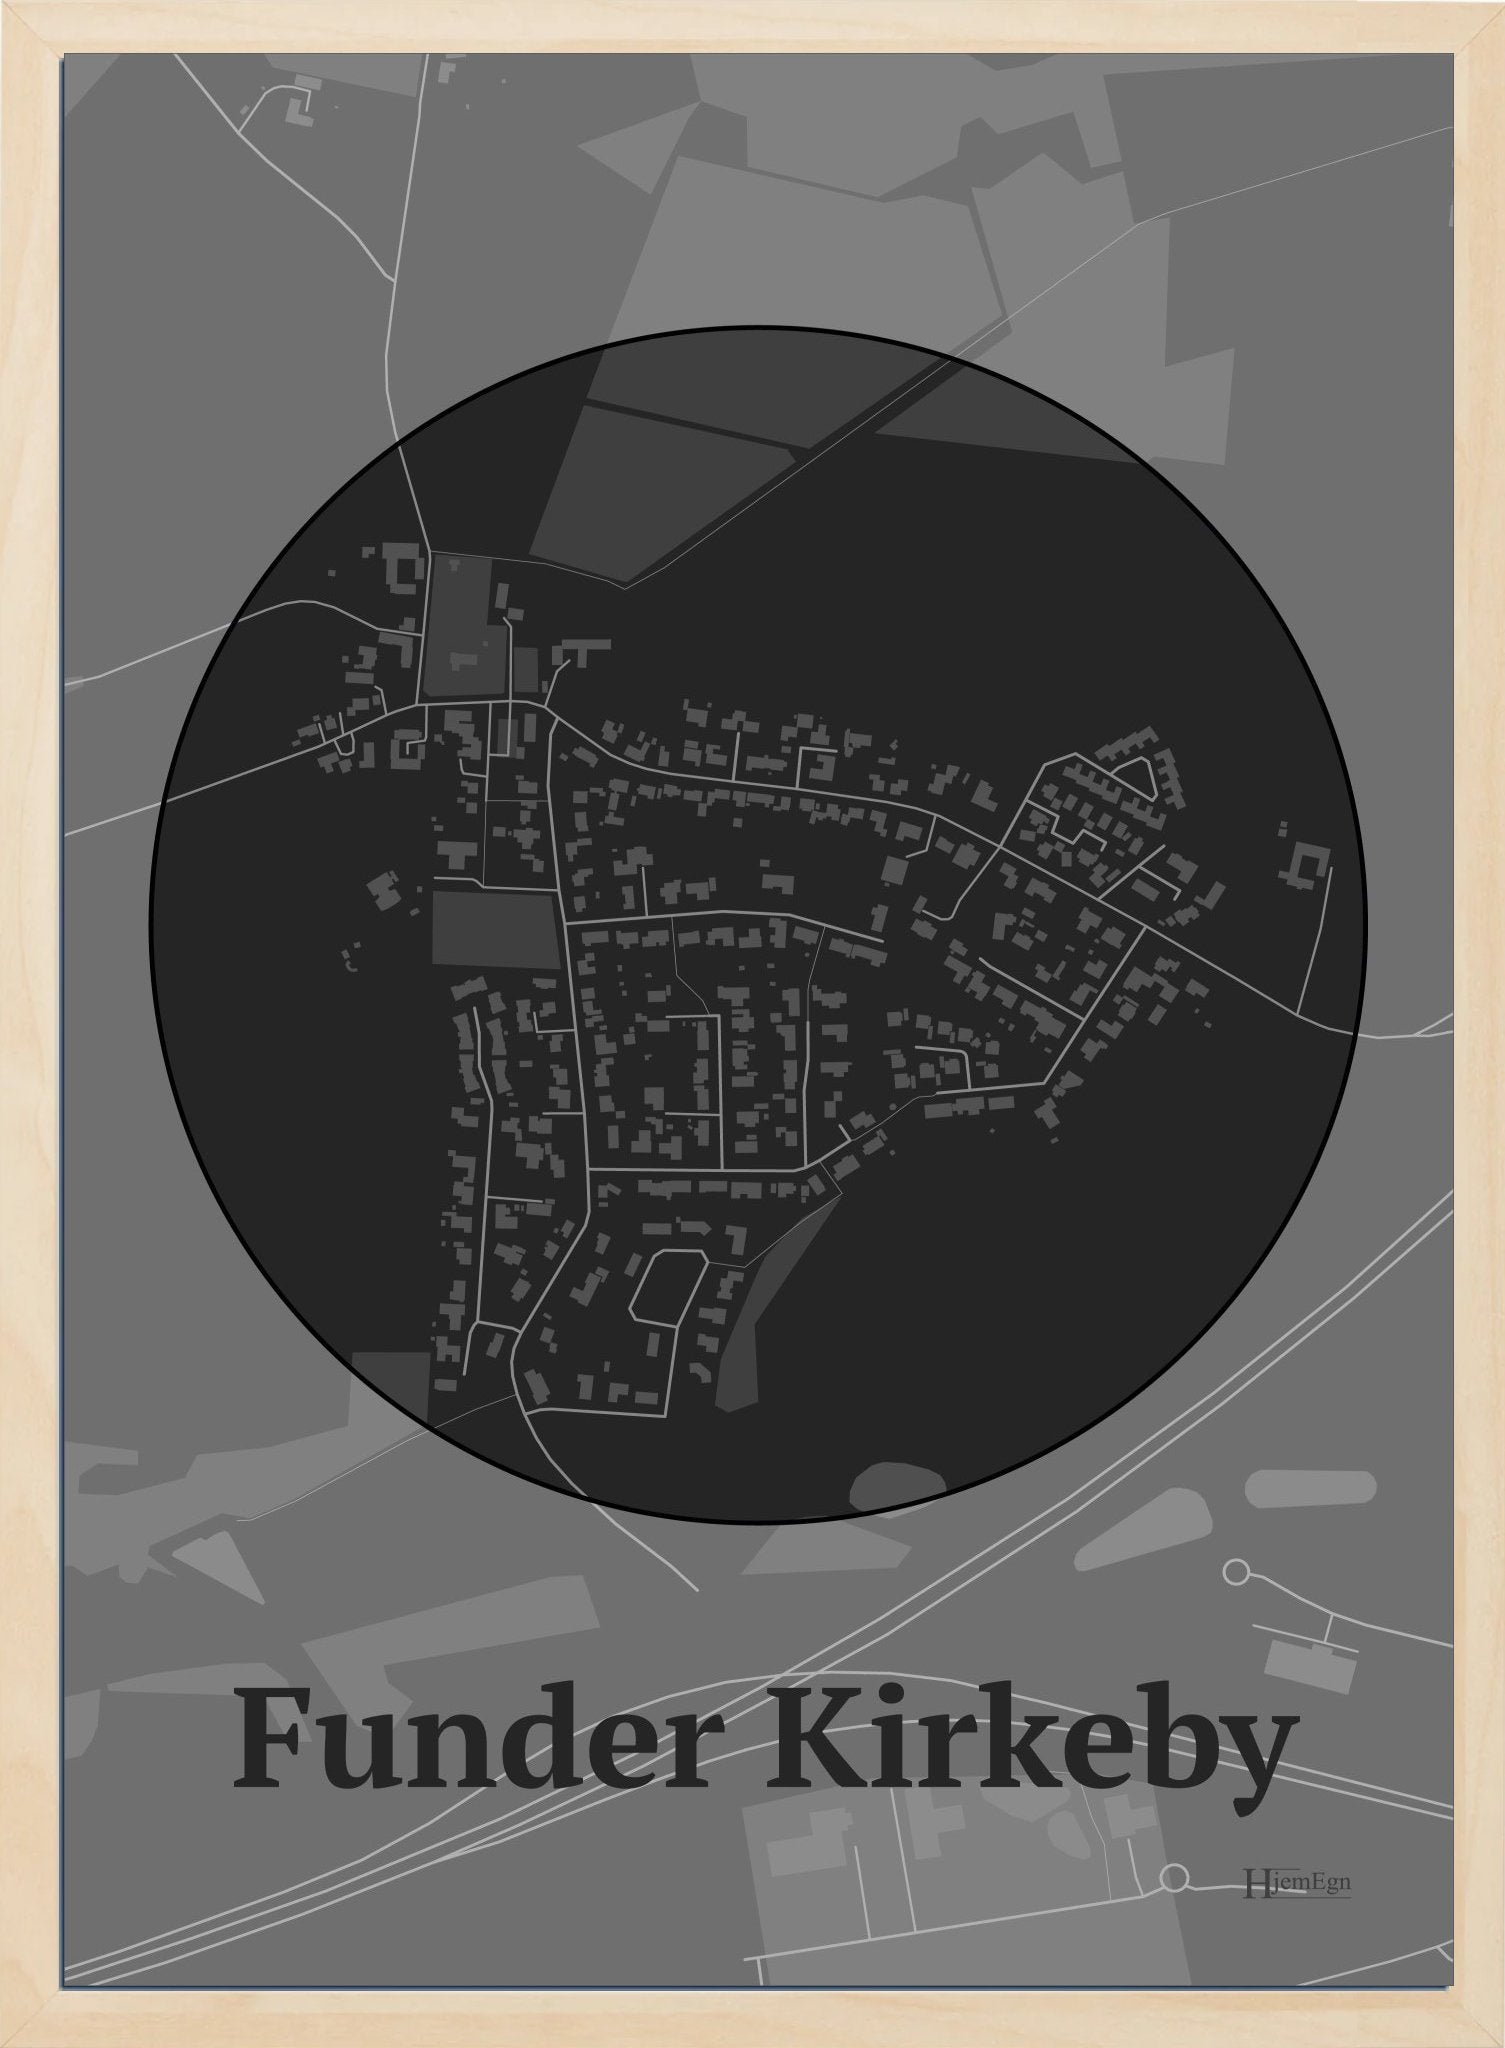 Funder Kirkeby plakat i farve mørk grå og HjemEgn.dk design centrum. Design bykort for Funder Kirkeby